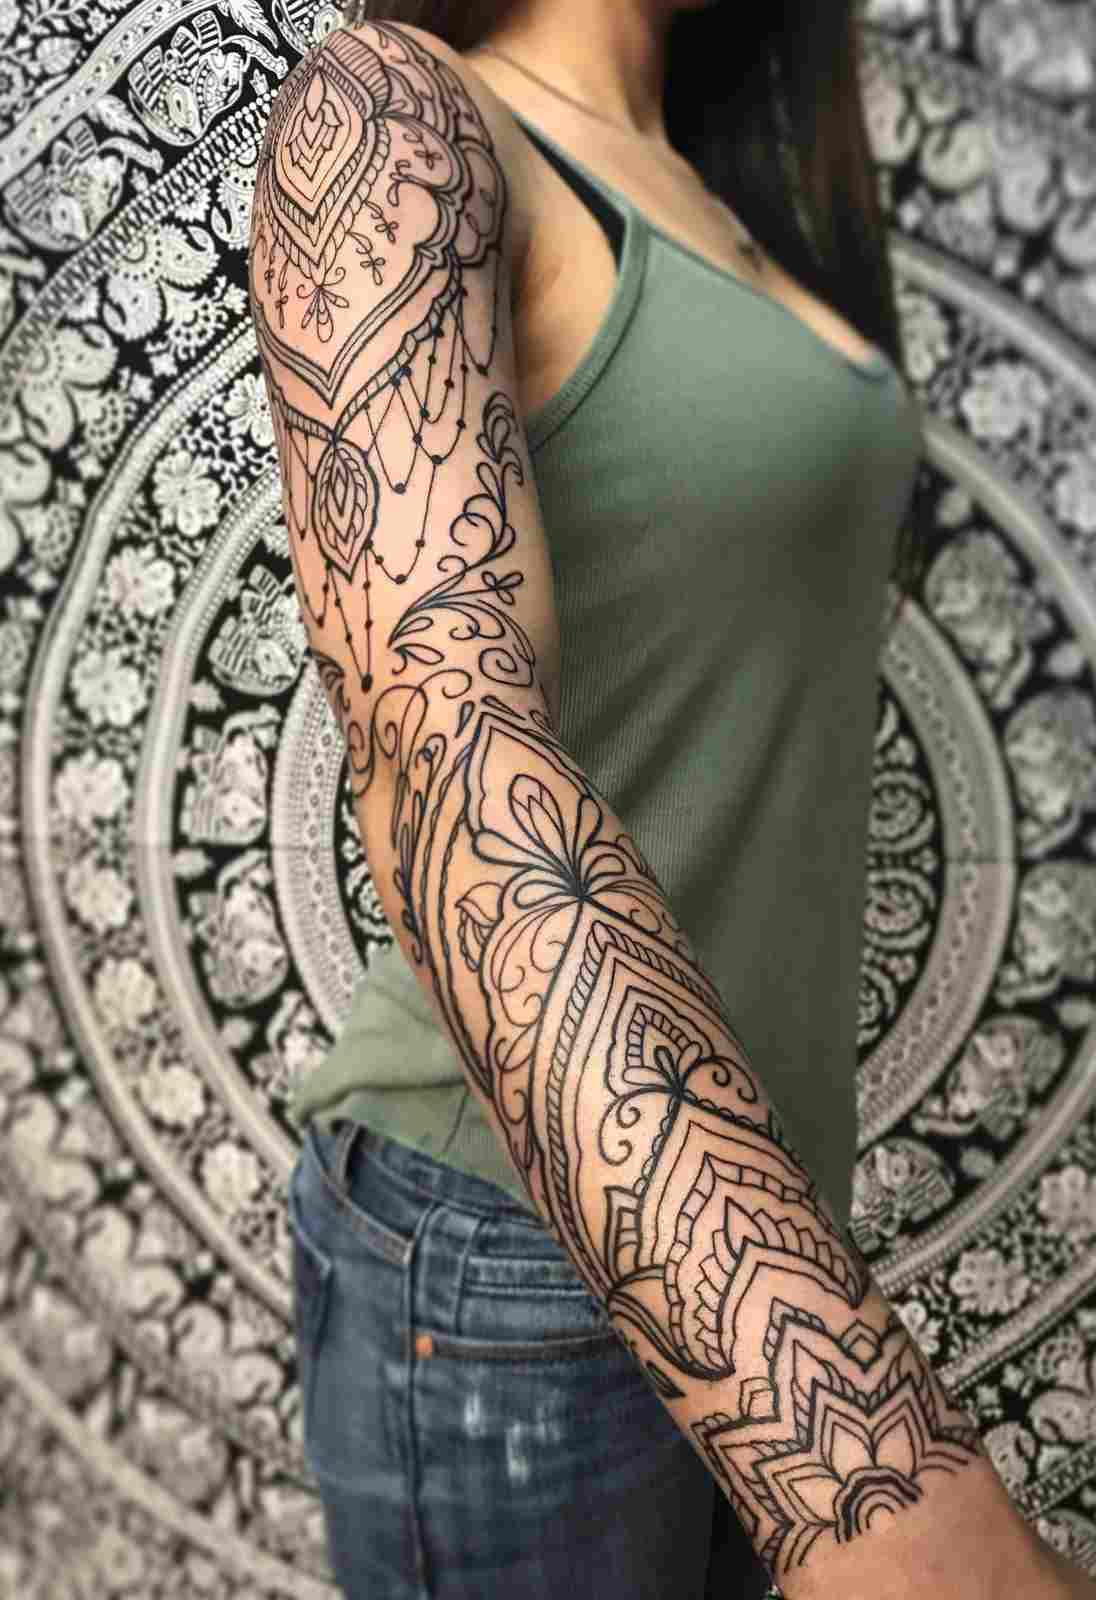 Tattooomotive woman mandala tattoo tattoo Meaning tattoo design upper arm.